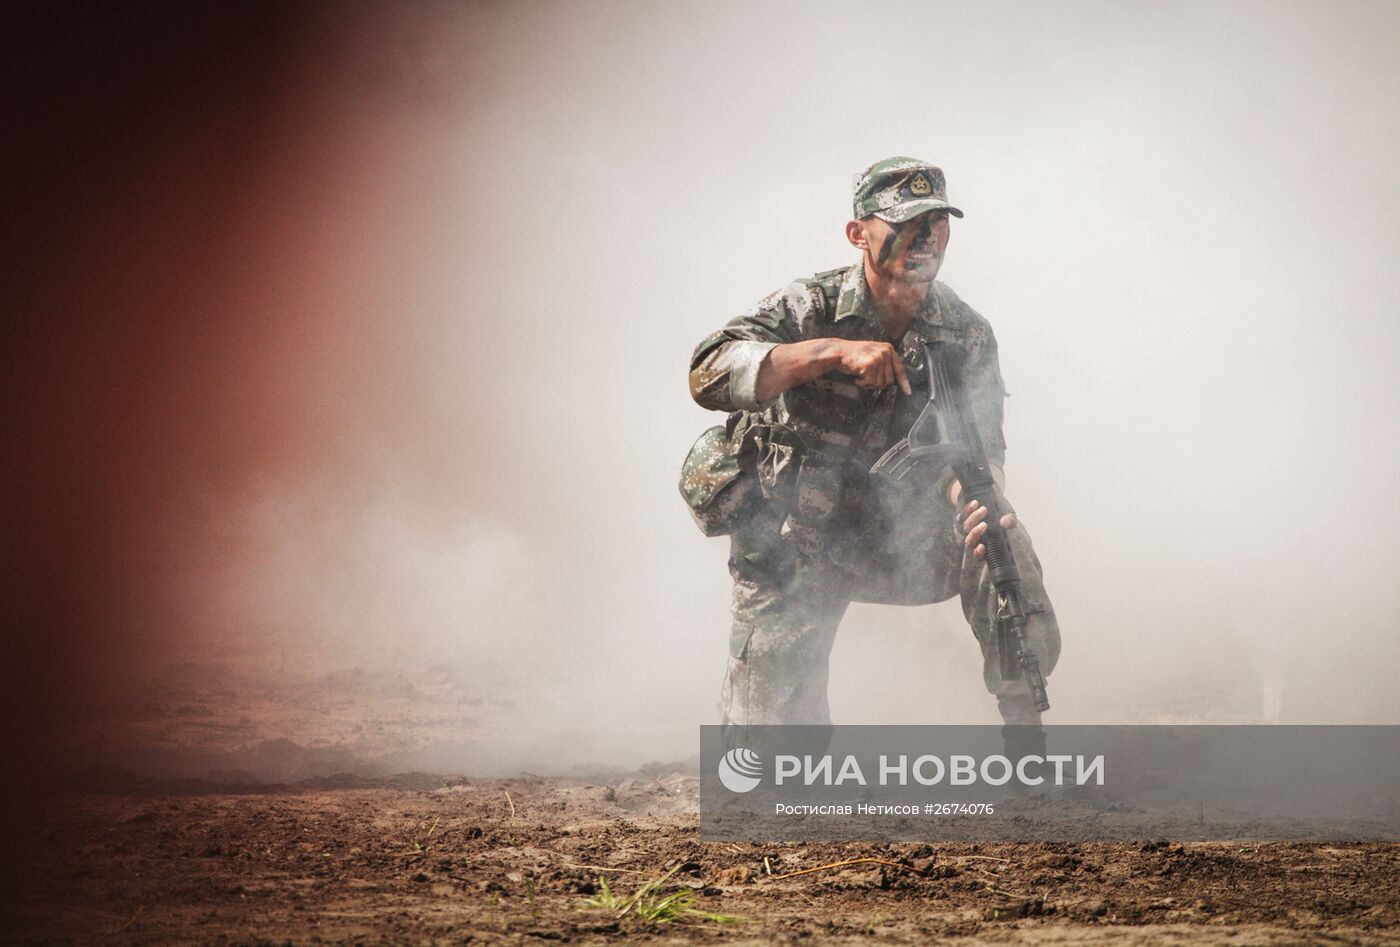 Всеармейский конкурс "Отличники войсковой разведки" в Новосибирске